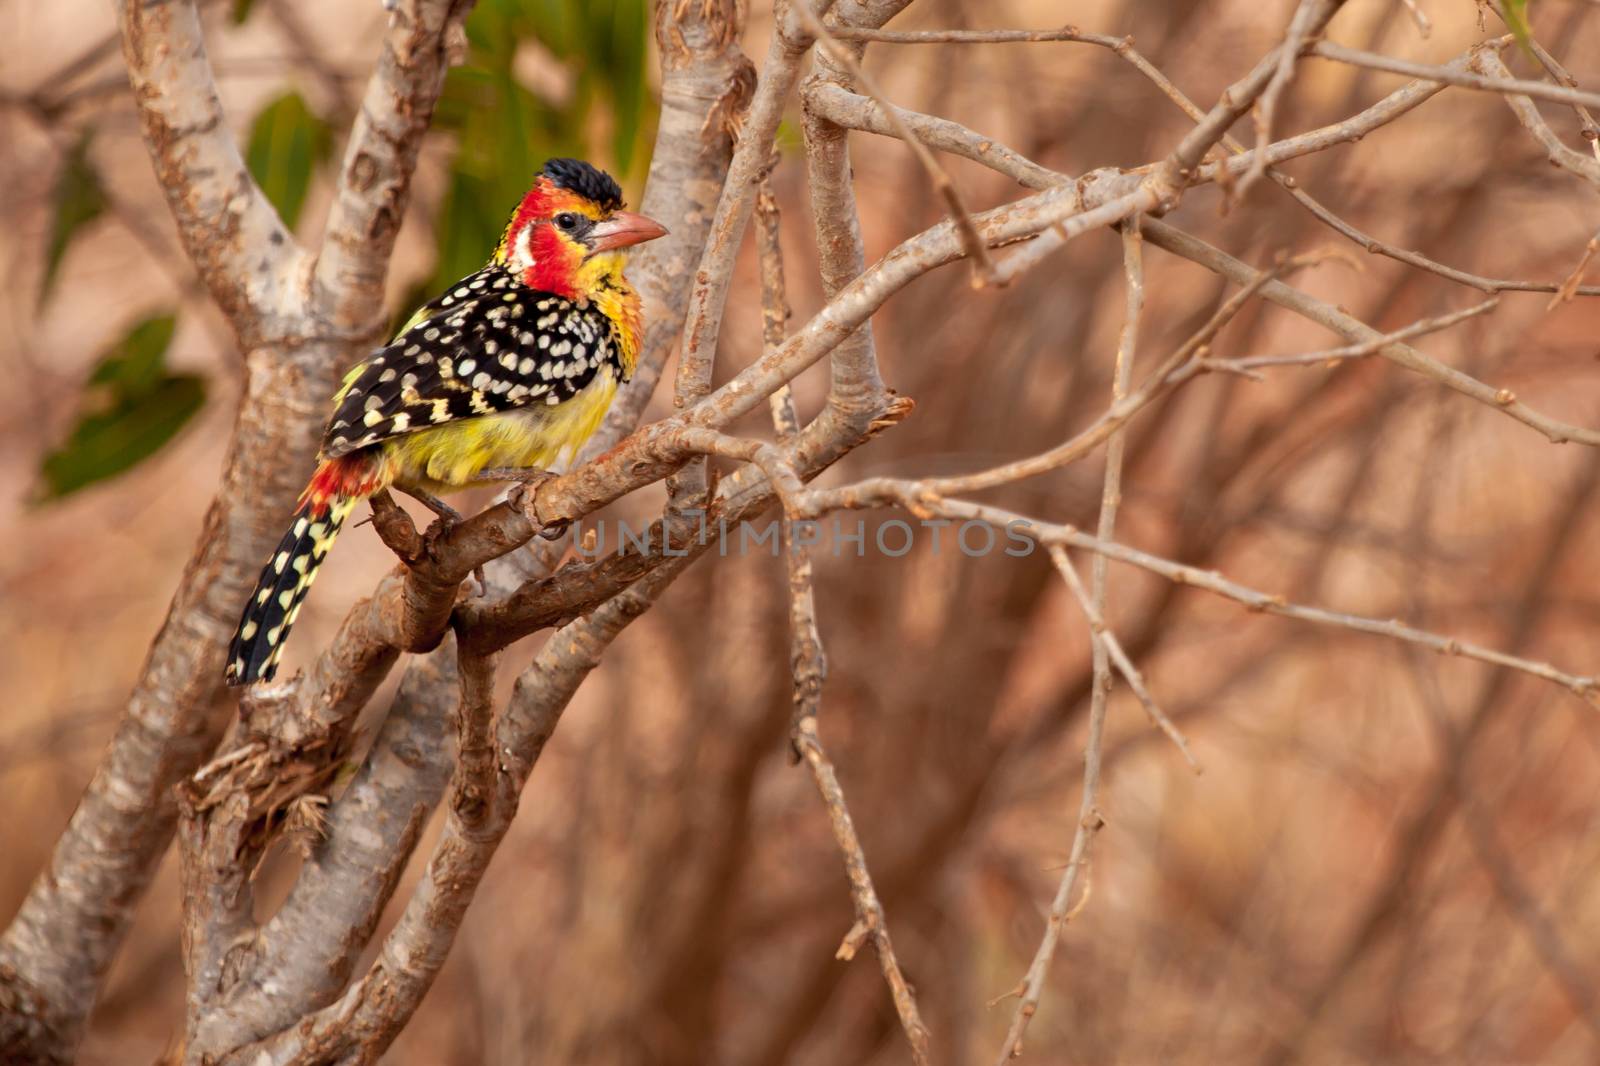 Colorful bird on the tree, on safari in Kenya